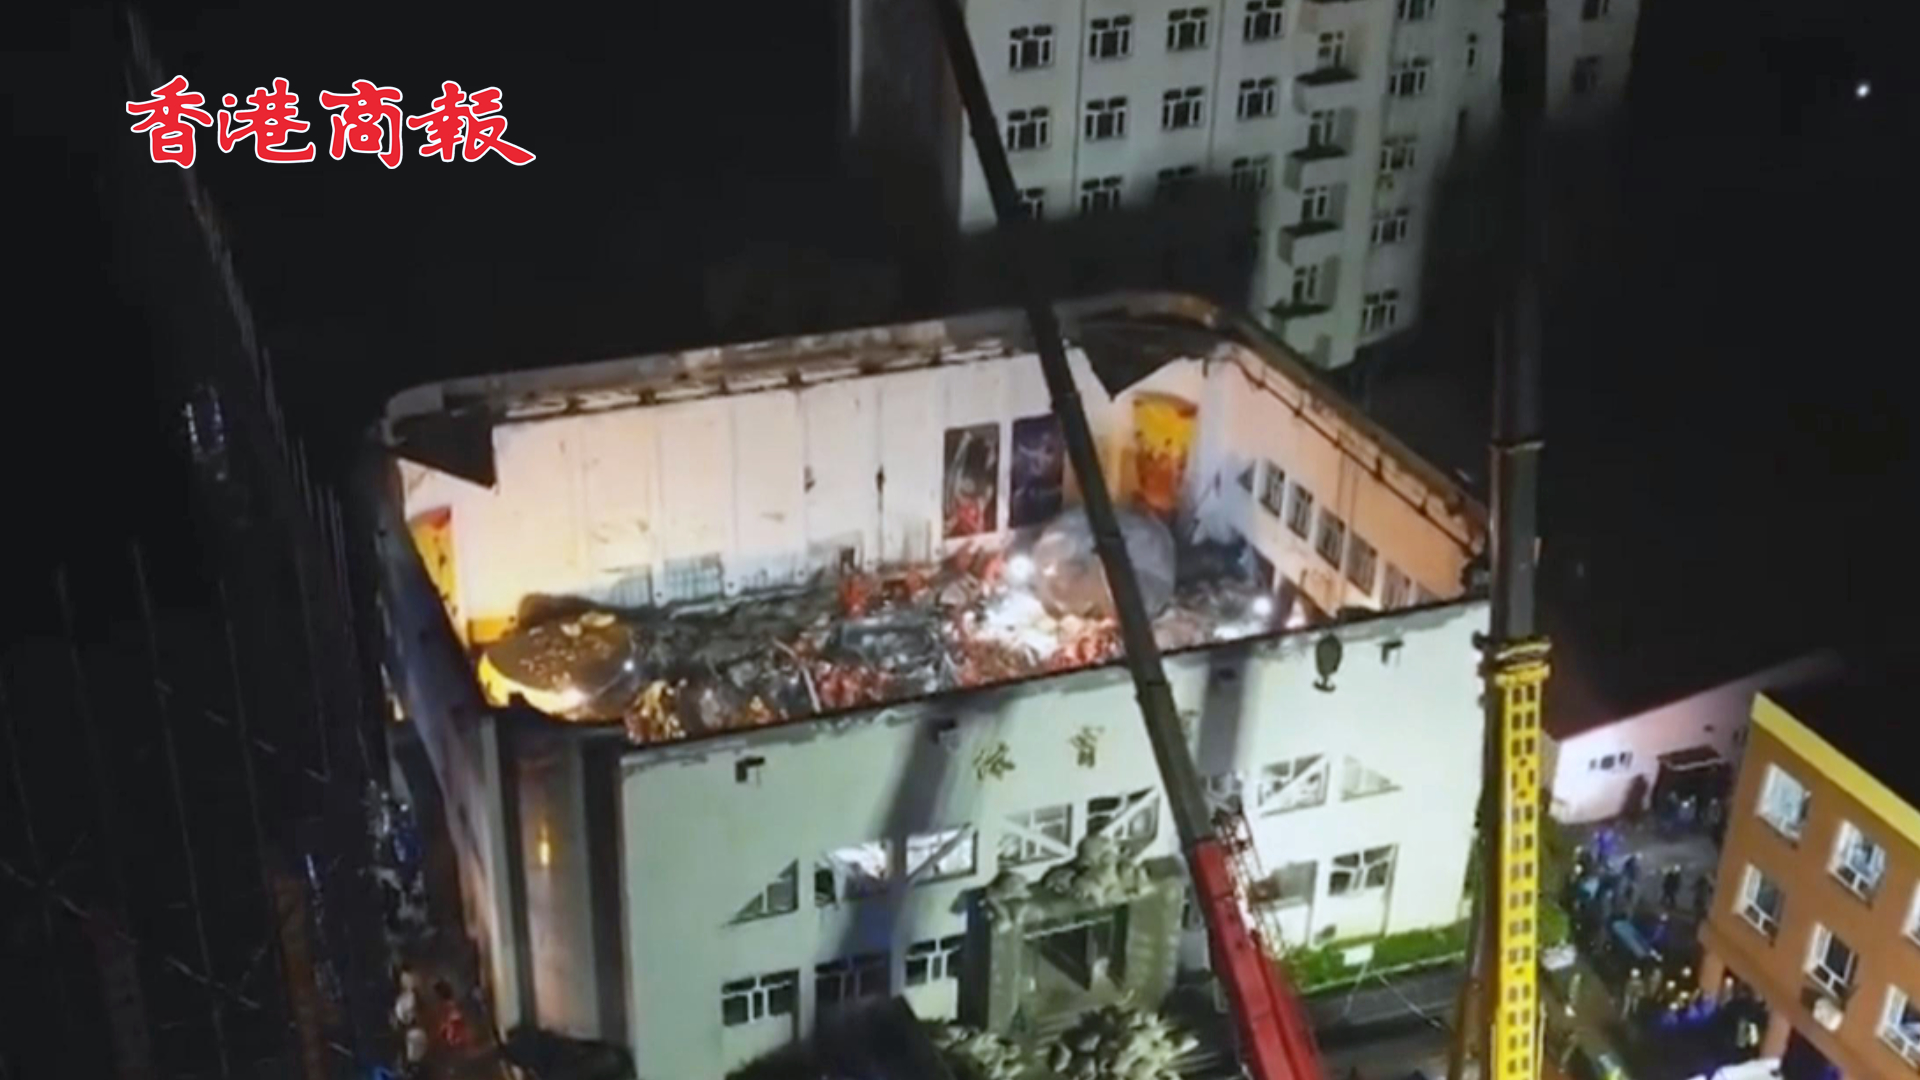 有片 | 齊齊哈爾體育館坍塌事故已致9人死亡 救援還在緊張進行中